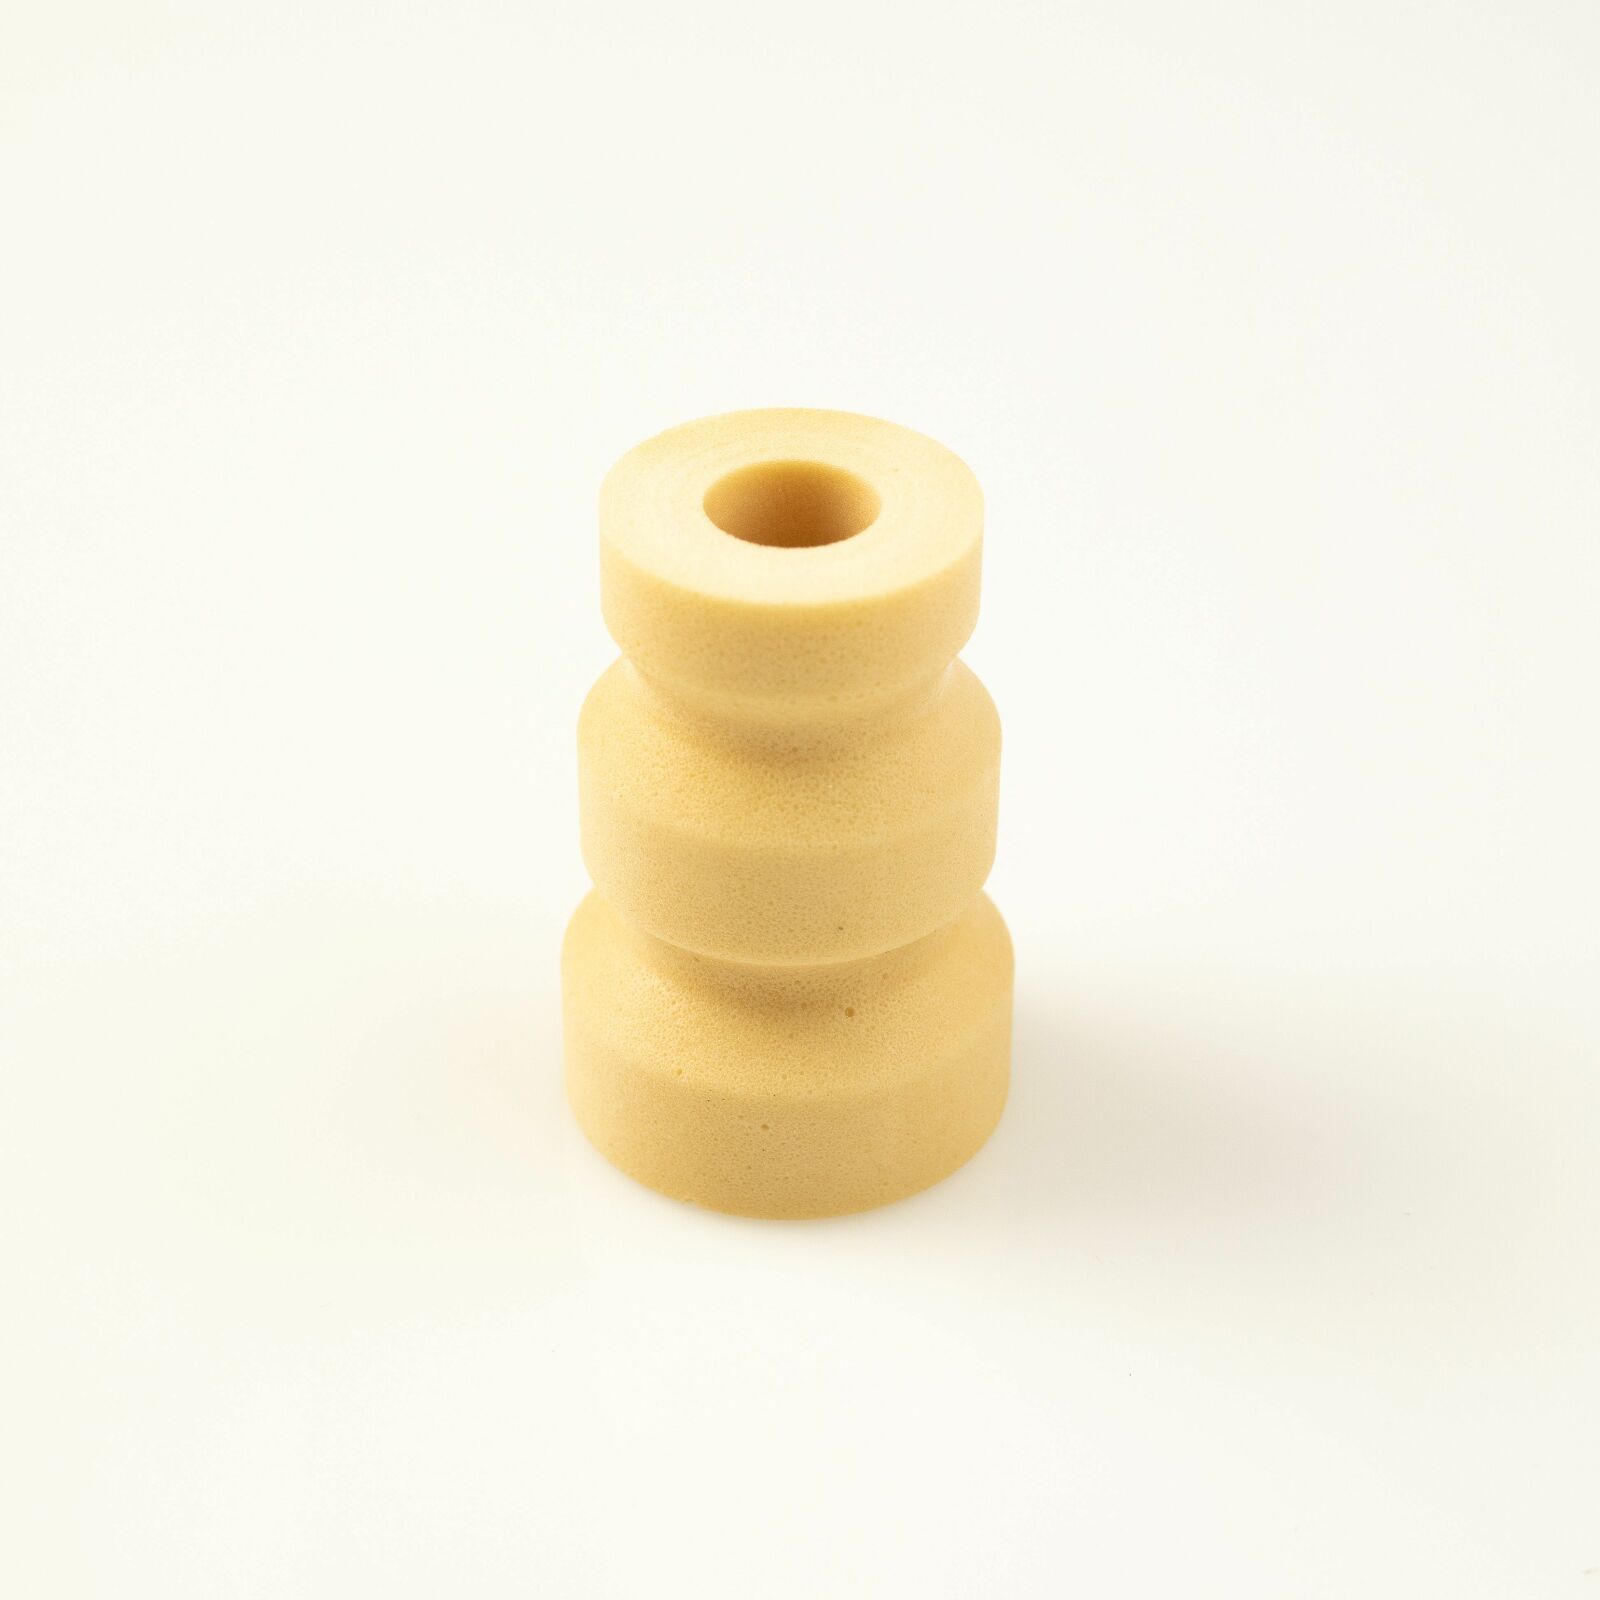 Obrázek produktu RCU bump rubber KYB 120341209001 12mm